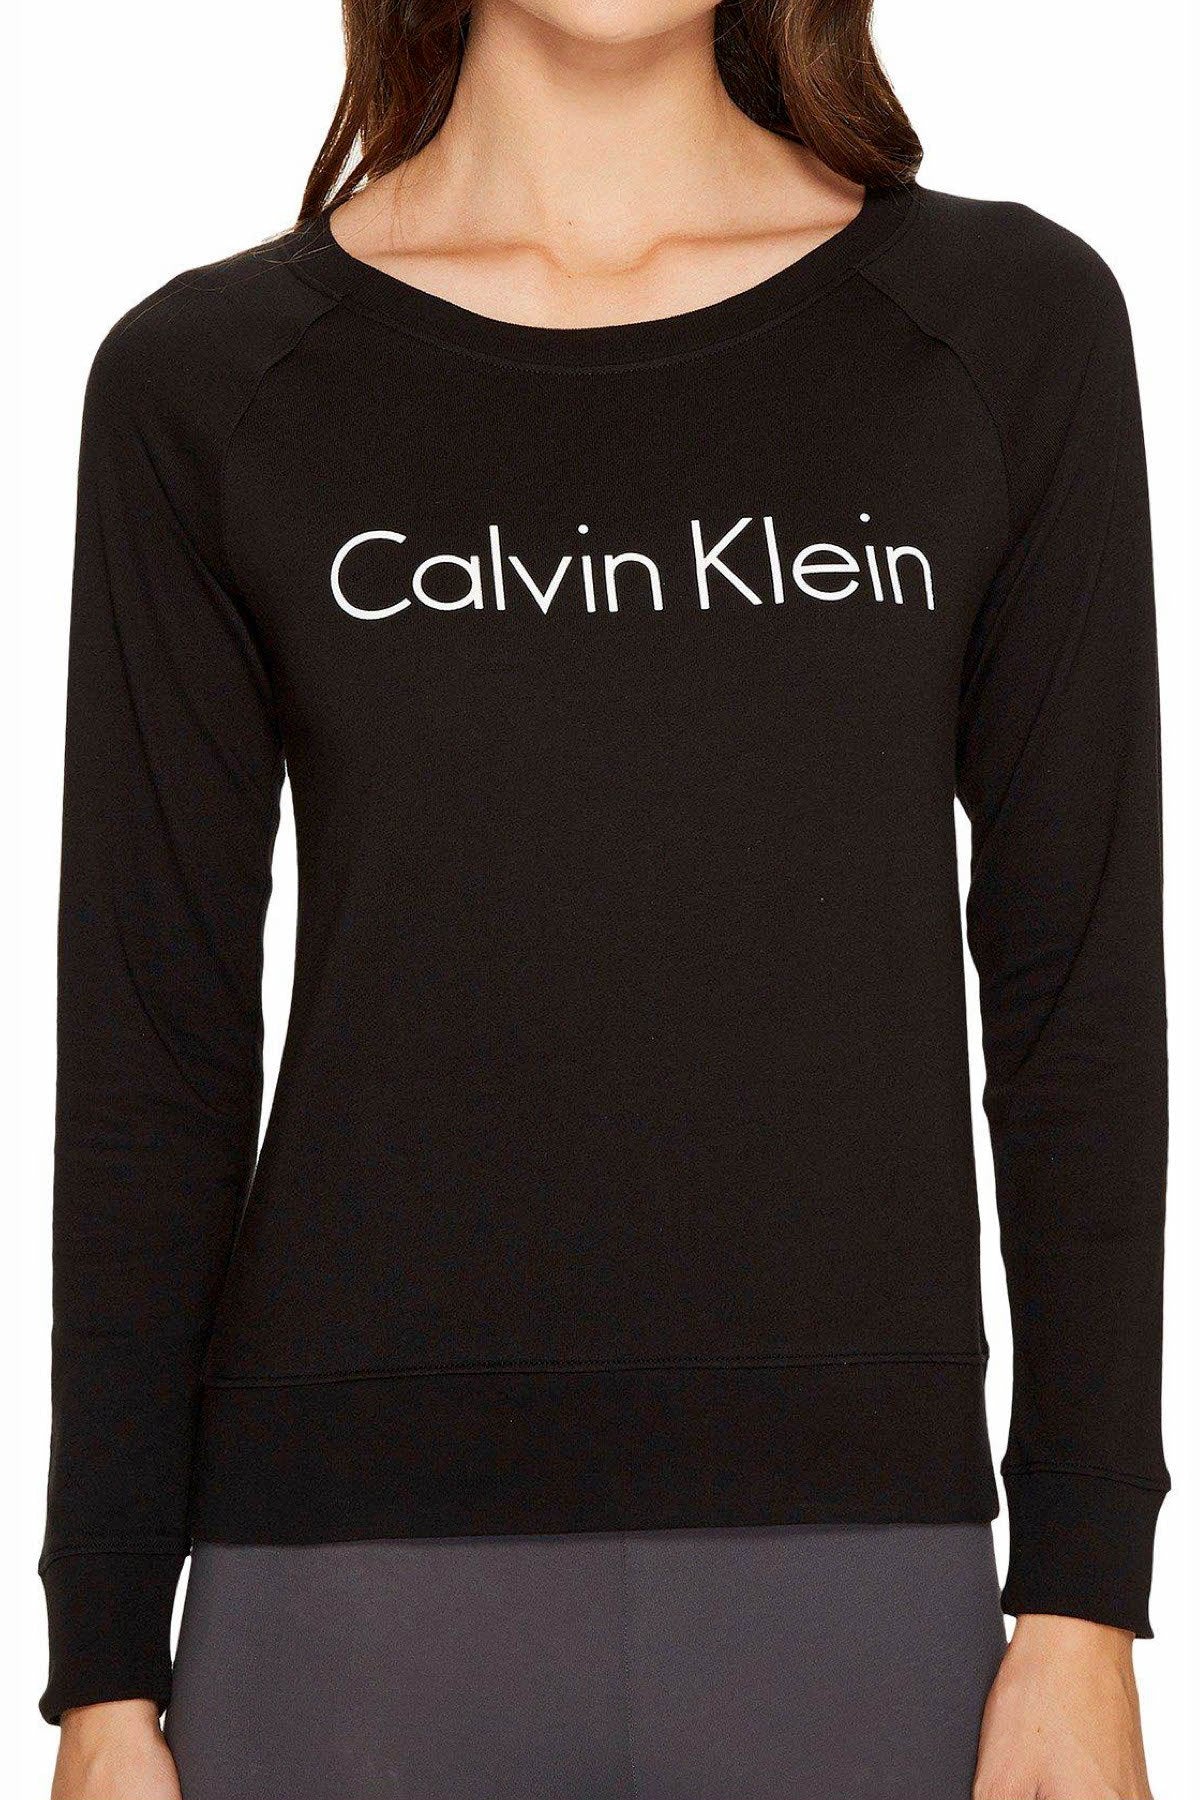 Calvin Klein Sleepwear Black Cotton Logo Coordinate L/S Raglan Top